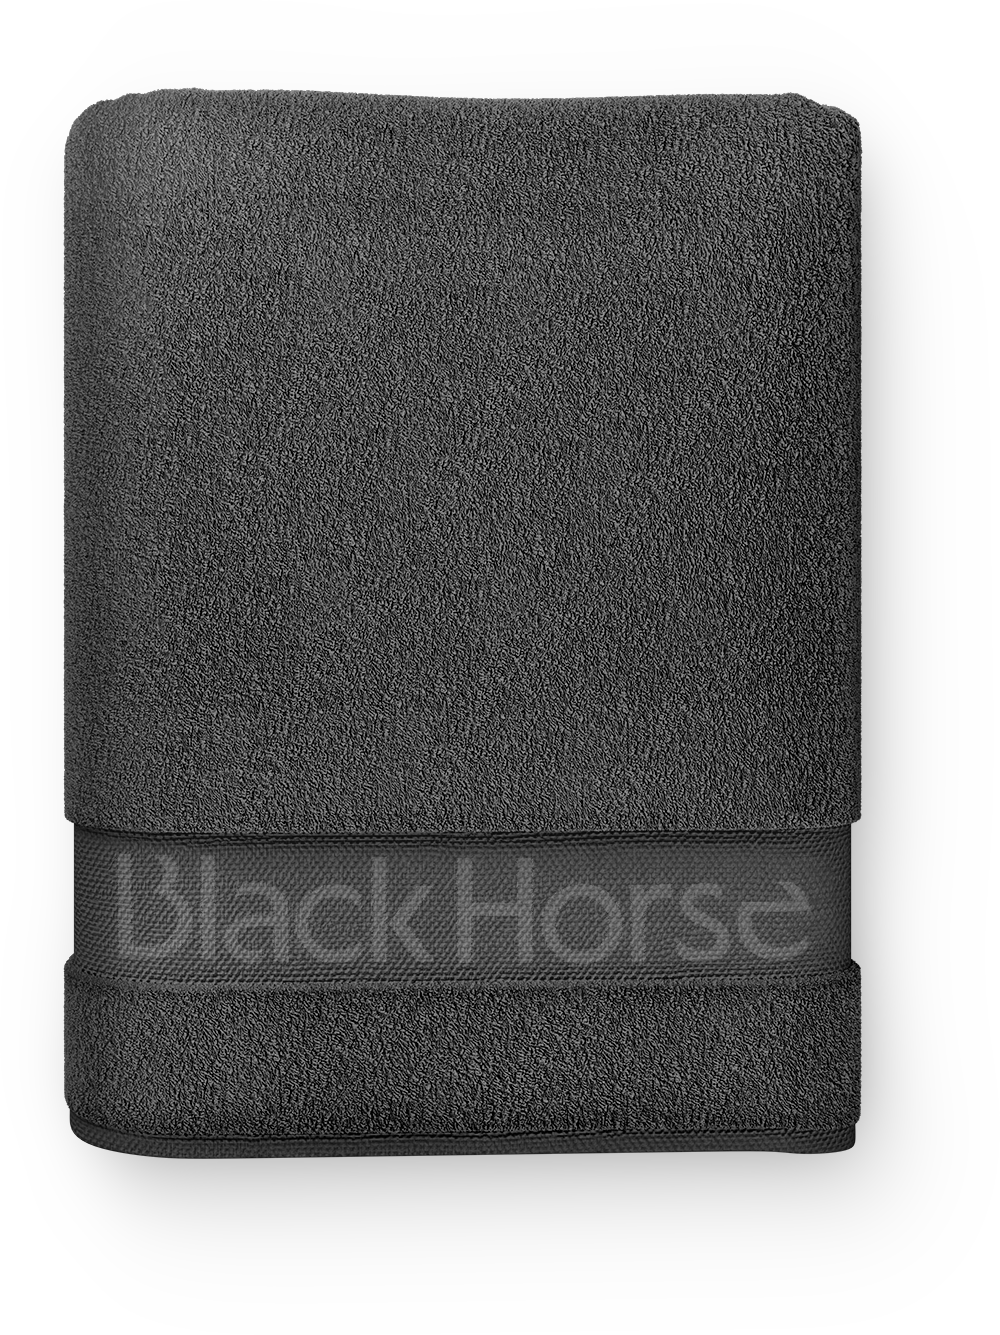 blackhorse_towel04